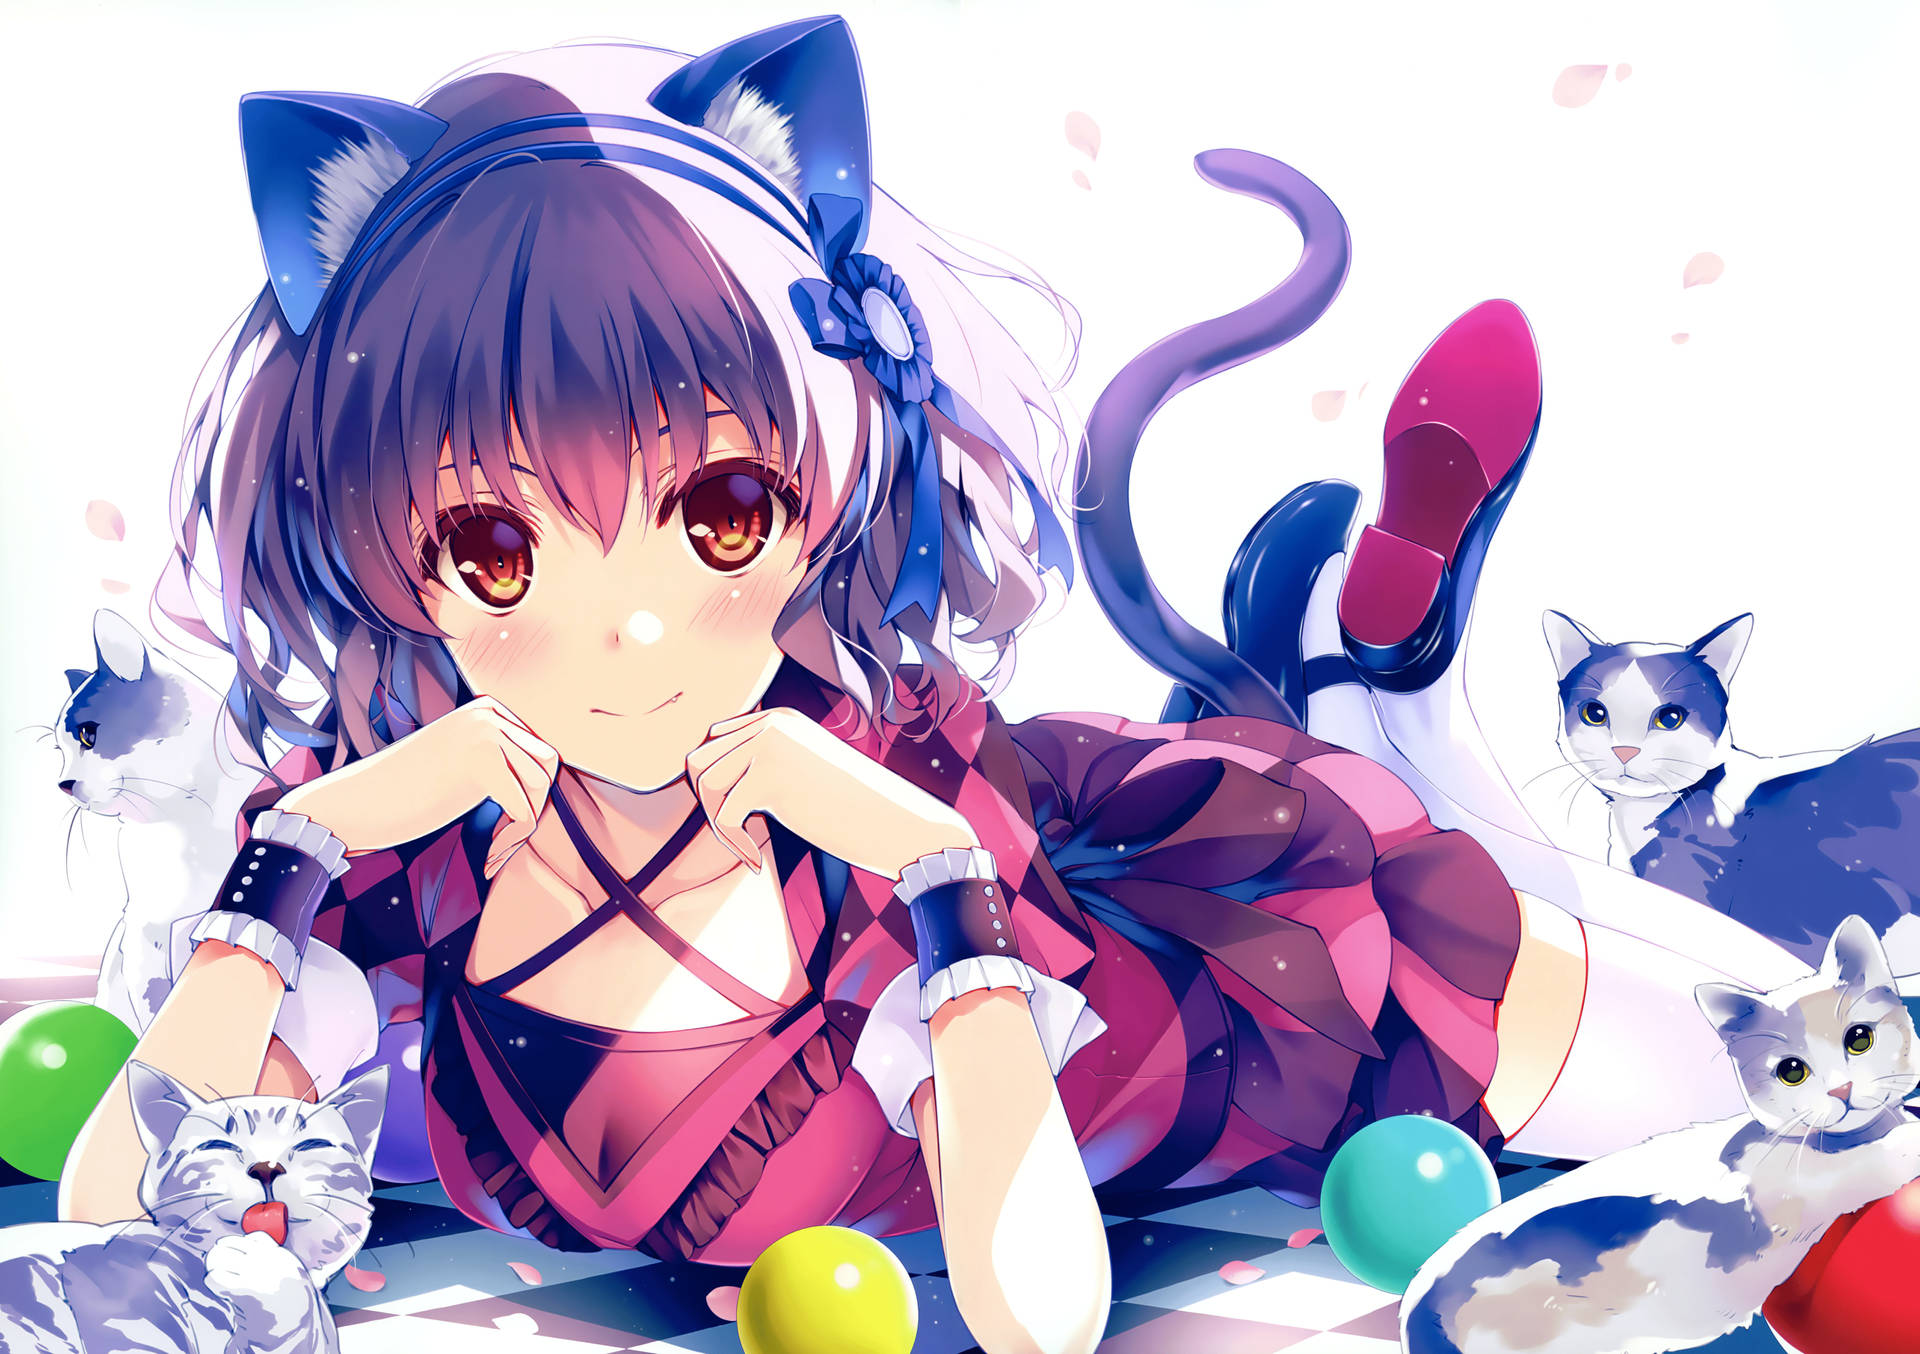 Blue-Eared Anime Cat Girl Wallpaper